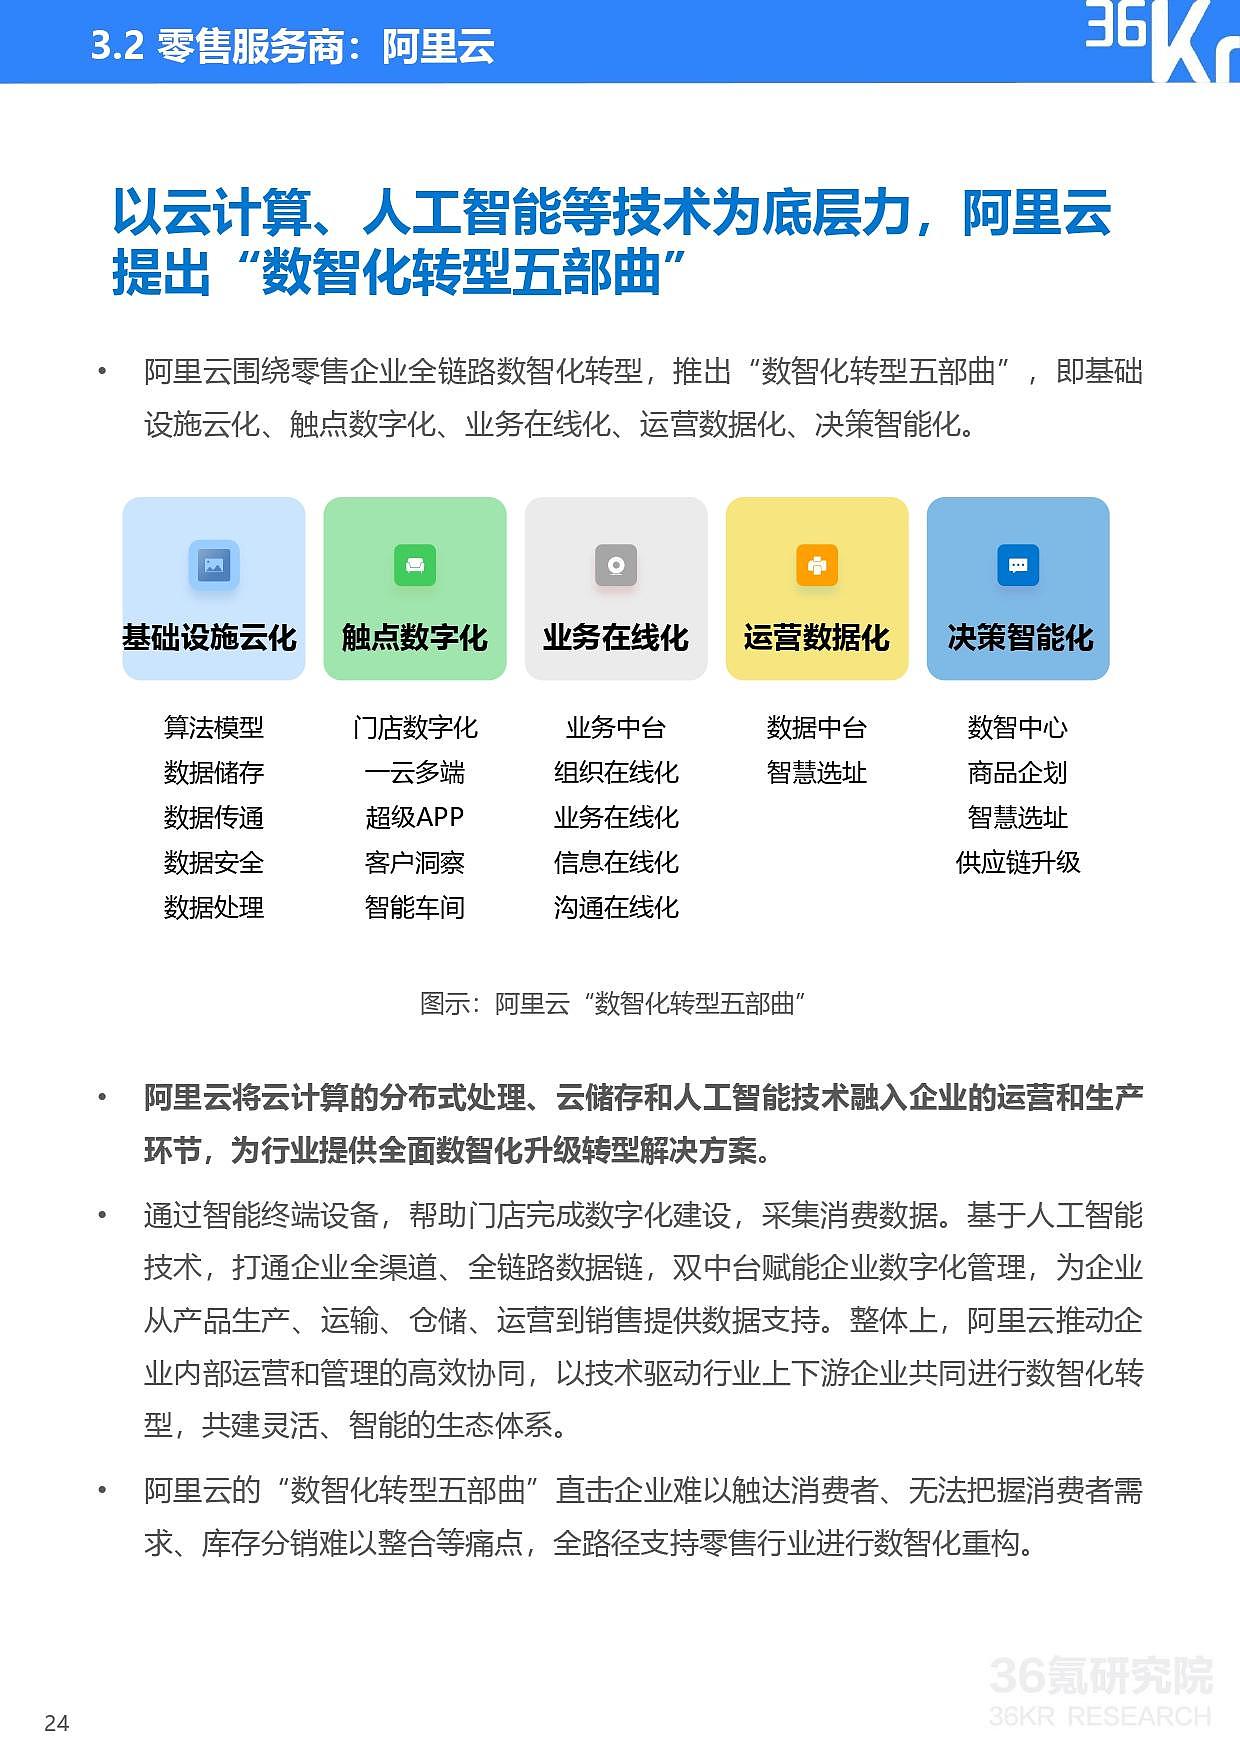 36氪研究院 | 2021年中国零售OMO研究报告 - 25